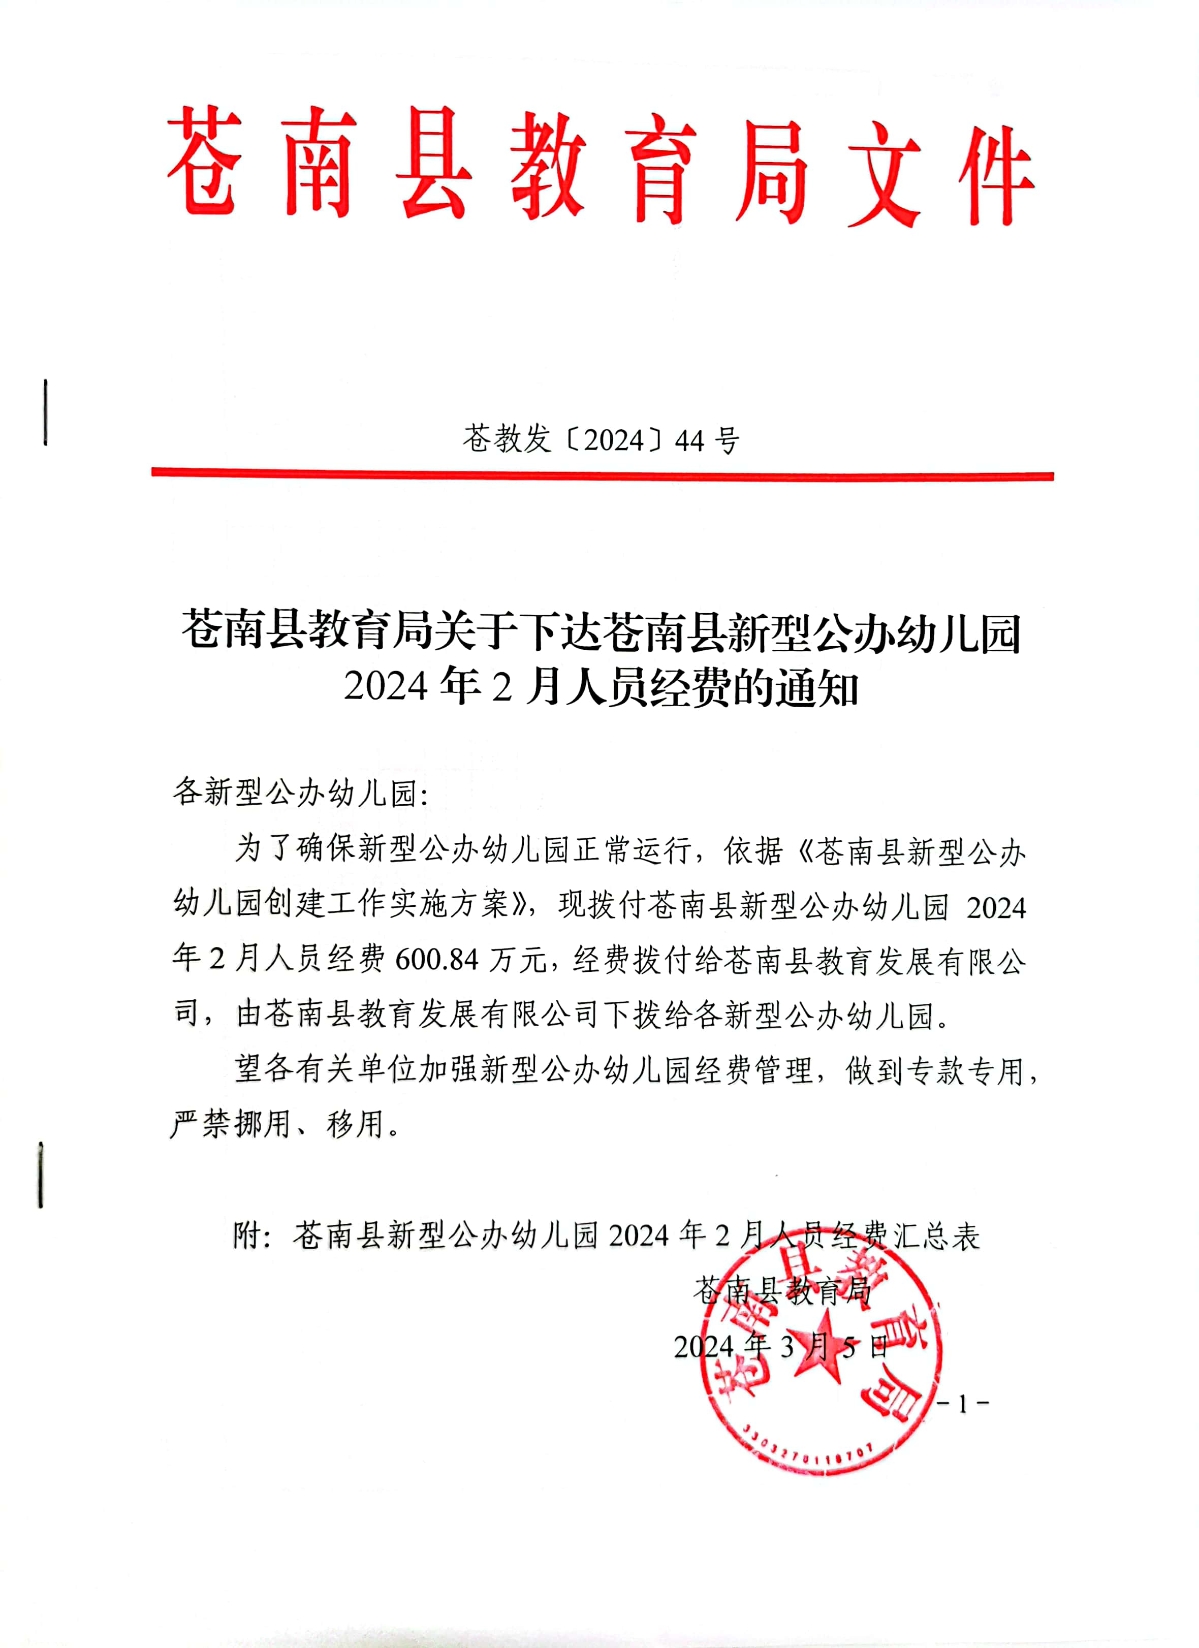 苍教发〔2024〕44号关于下达苍南县新型公办幼儿园2024年2月人员经费的通知.jpg